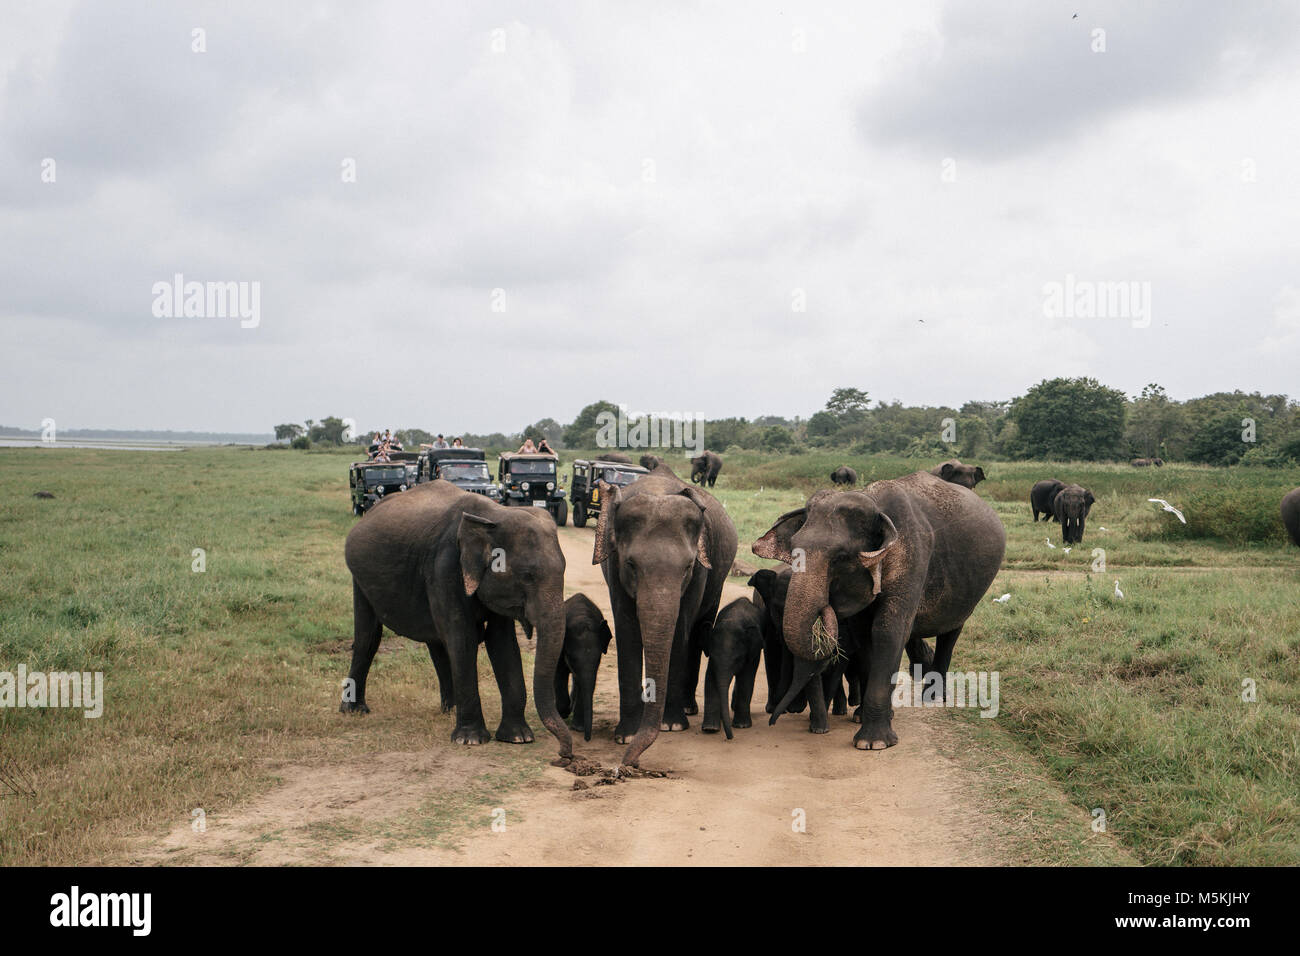 Recueillir des éléphants sauvages dans le Parc National Minneriya, Sri Lanka. Le parc est pensé pour contenir près de 200 éléphants sauvages. Banque D'Images